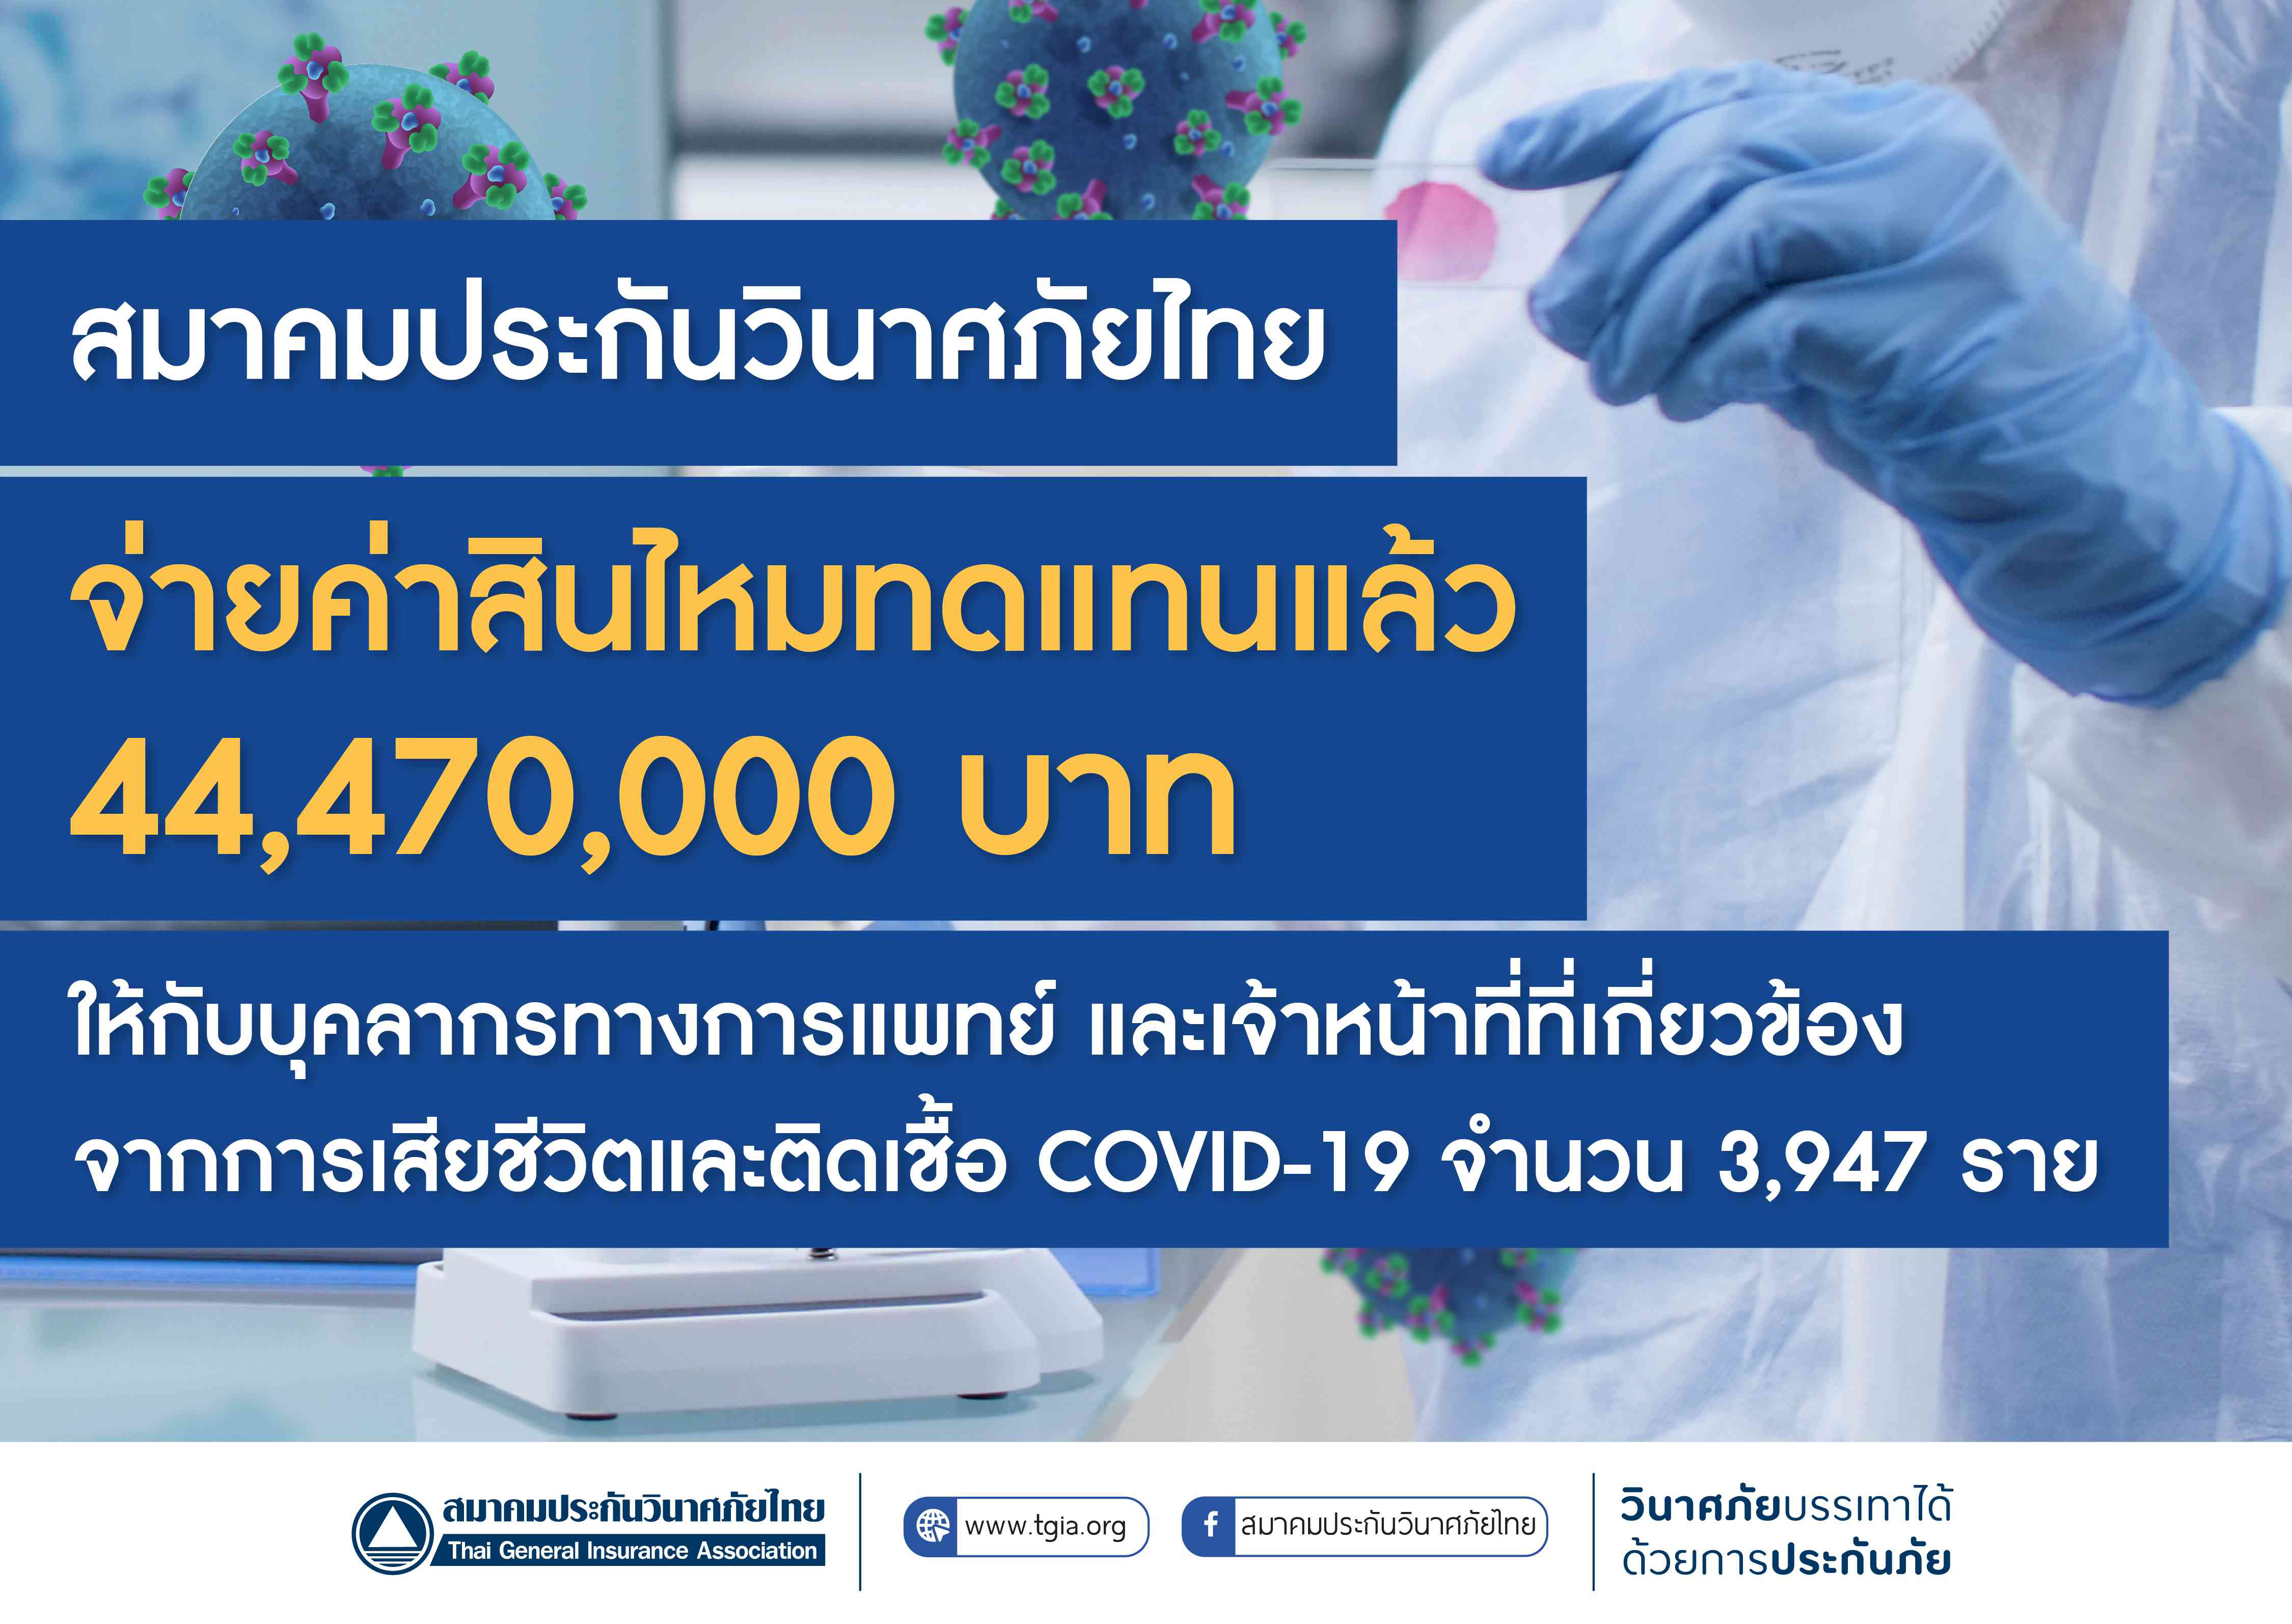 สมาคมประกันวินาศภัยไทย จ่ายค่าสินไหมทดแทนแล้ว 44,470,000 บาท ให้กับบุคลากรทางการแพทย์ และเจ้าหน้าที่ที่เกี่ยวข้องจากการเสียชีวิตและติดเชื้อ COVID-19 จำนวน 3,947 ราย